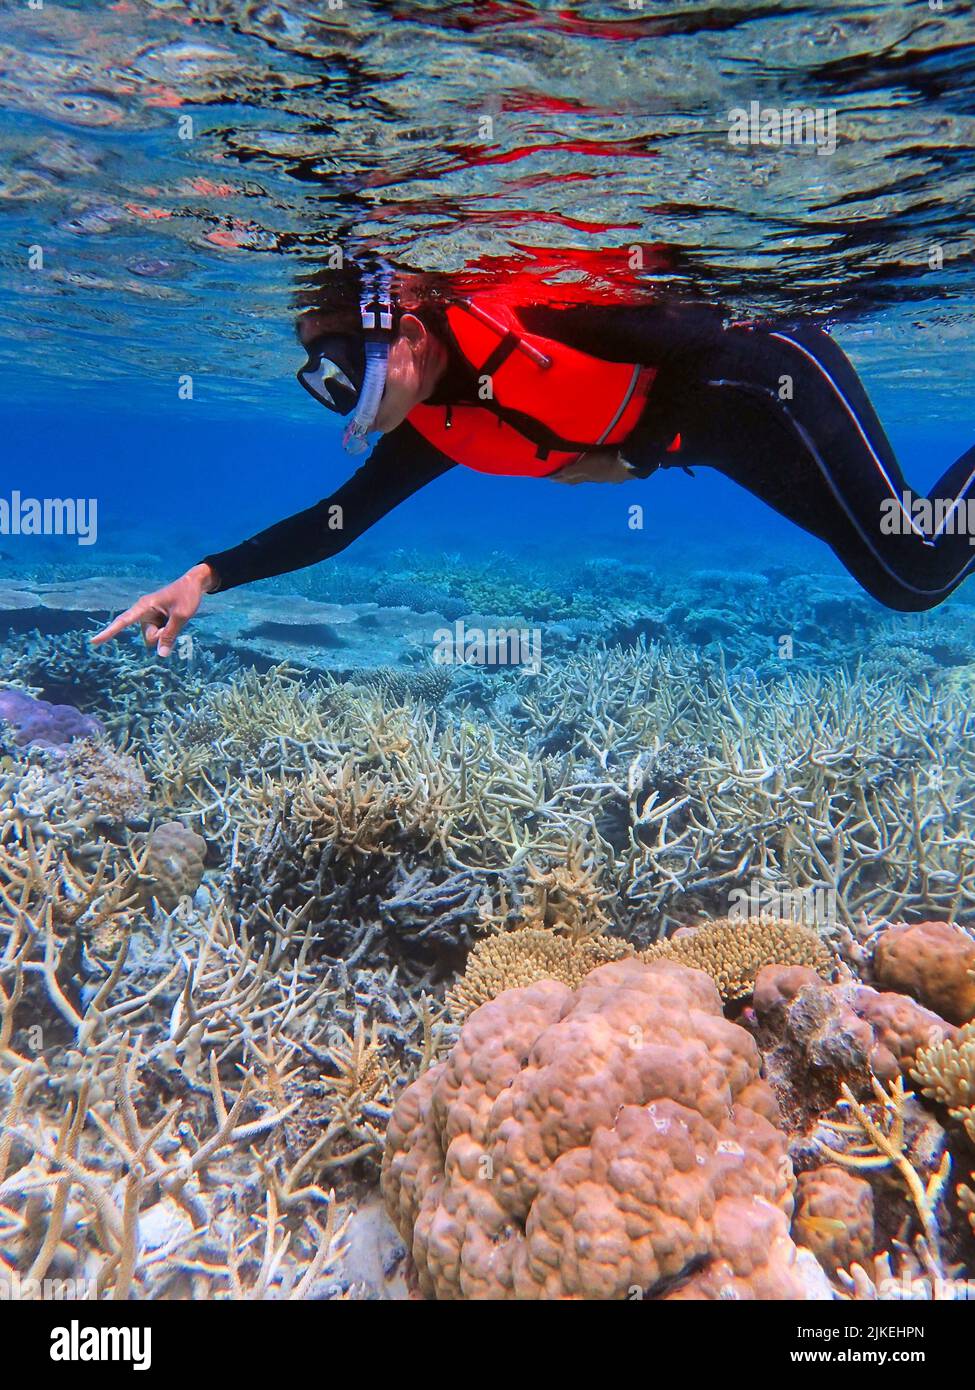 Indonesia Anambas Islands - Frauen schnorcheln im Korallenriff Stockfoto